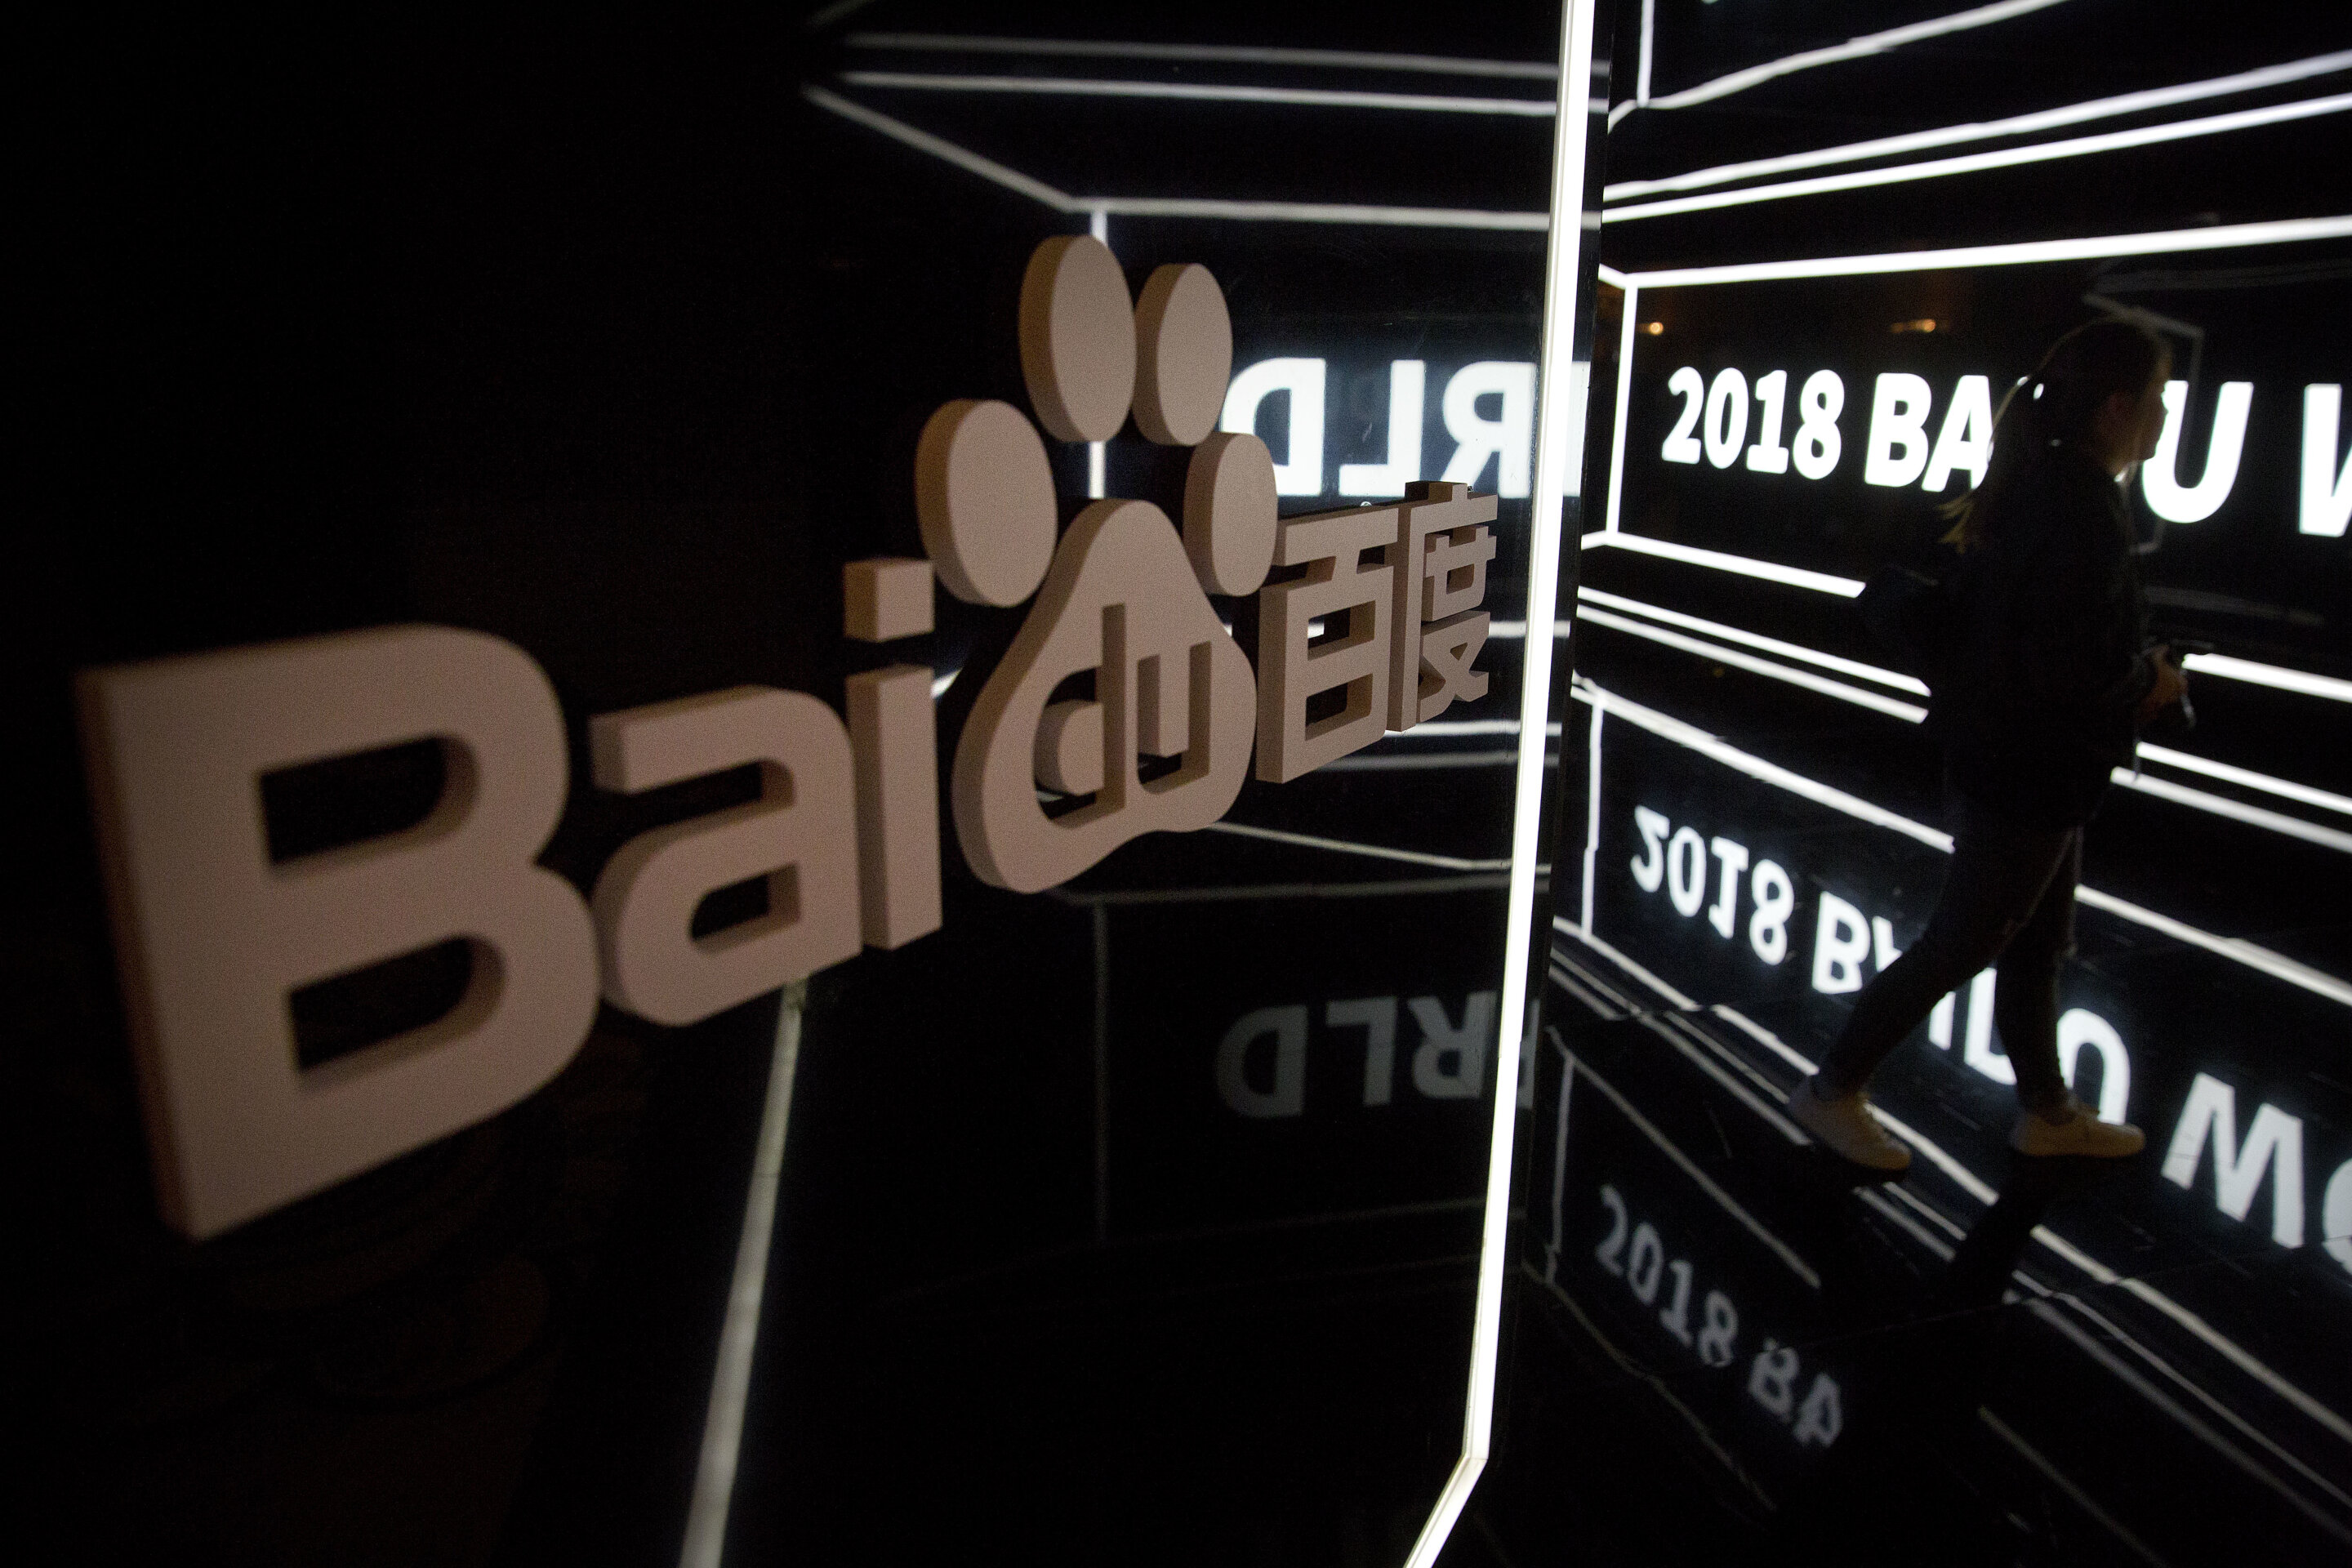 Baidu ha presentato il modello Ernie 4.0 AI e lo ha definito un concorrente del GPT-4